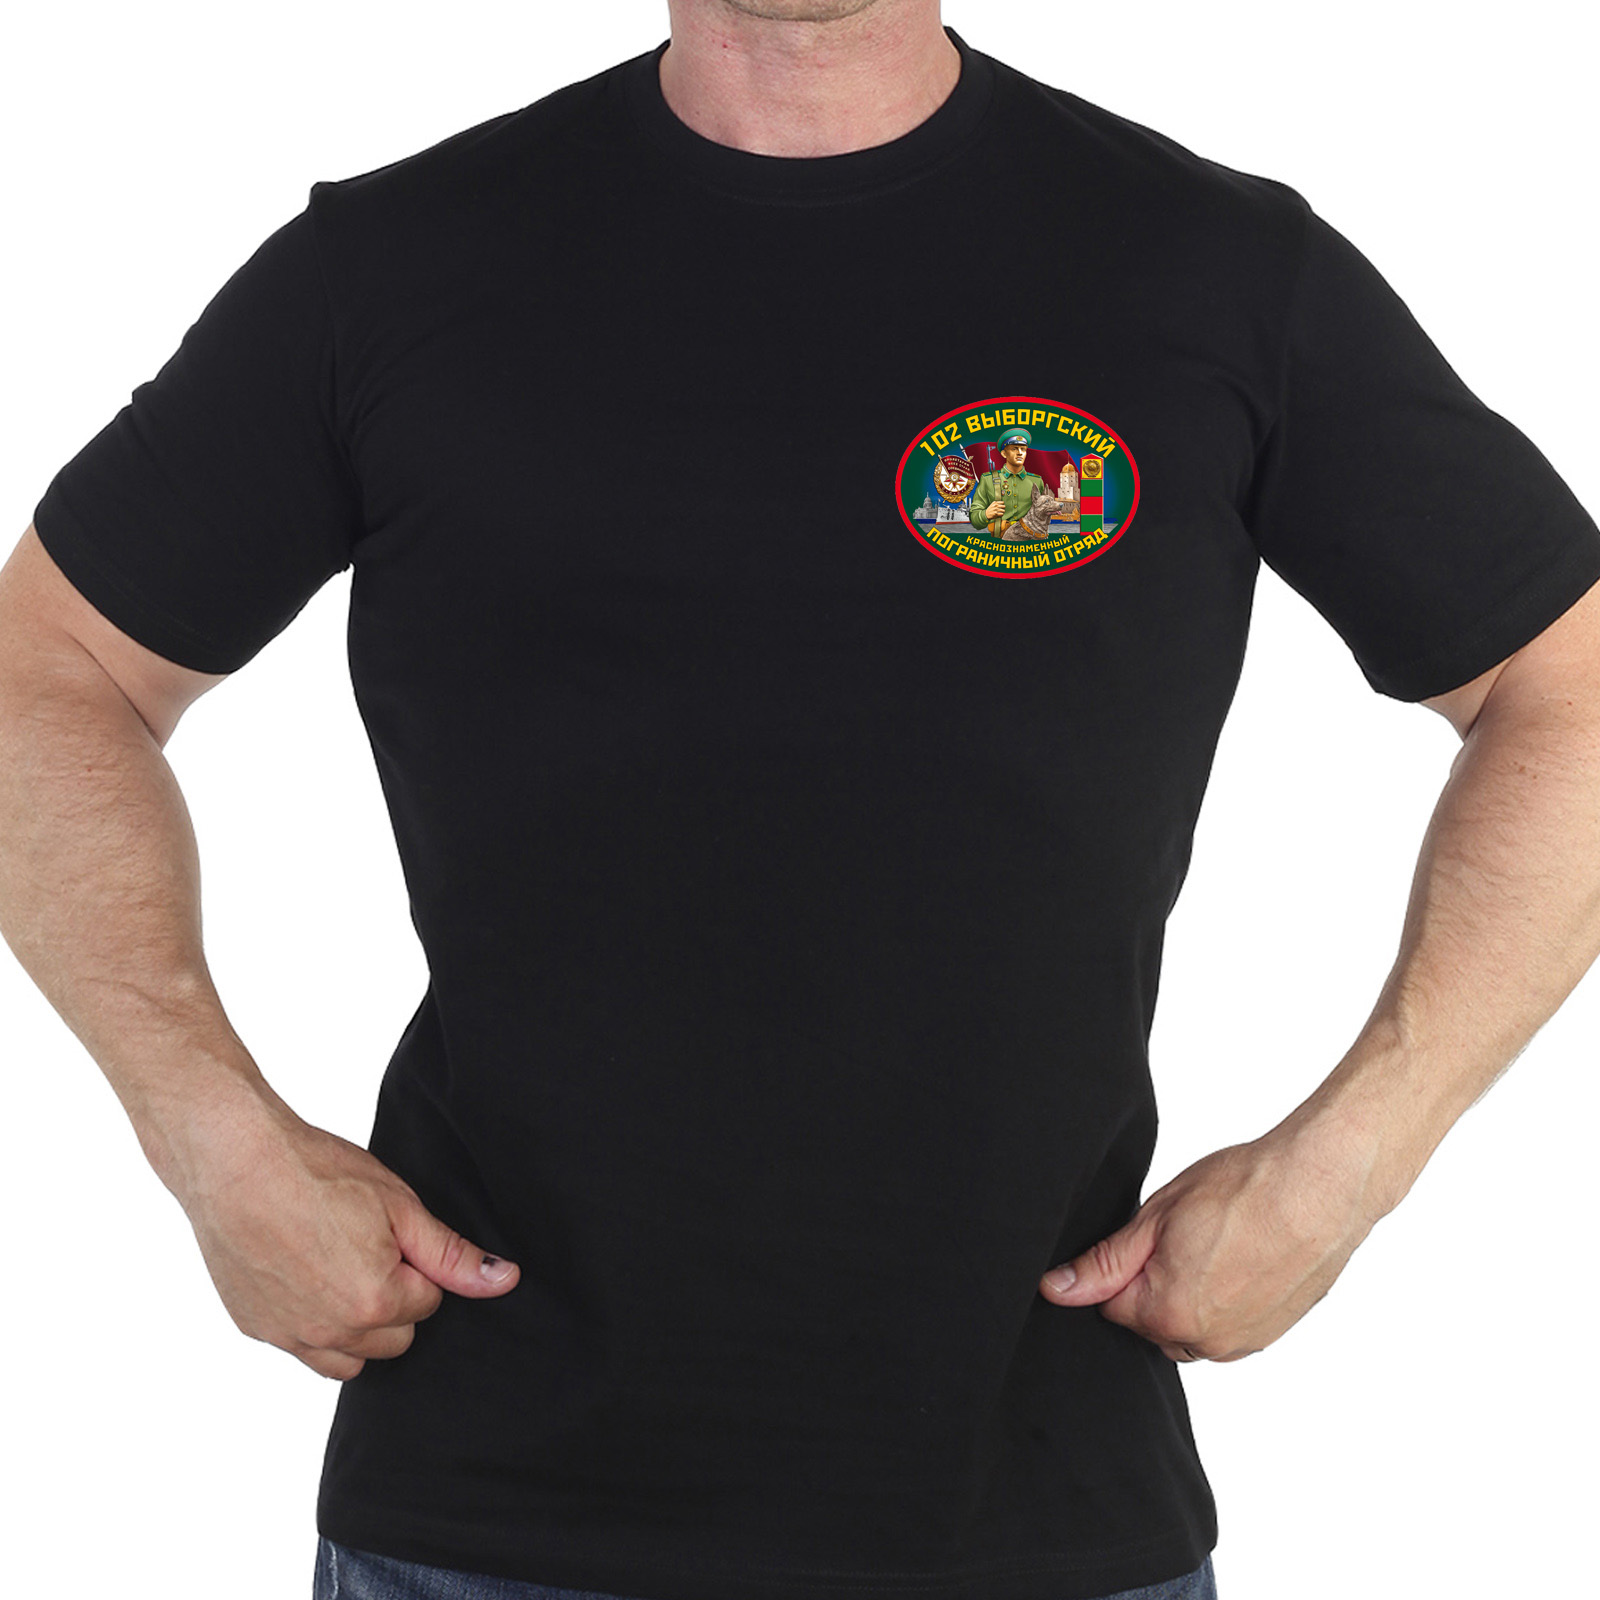 Чёрная футболка "102 Выборгский пограничный отряд"